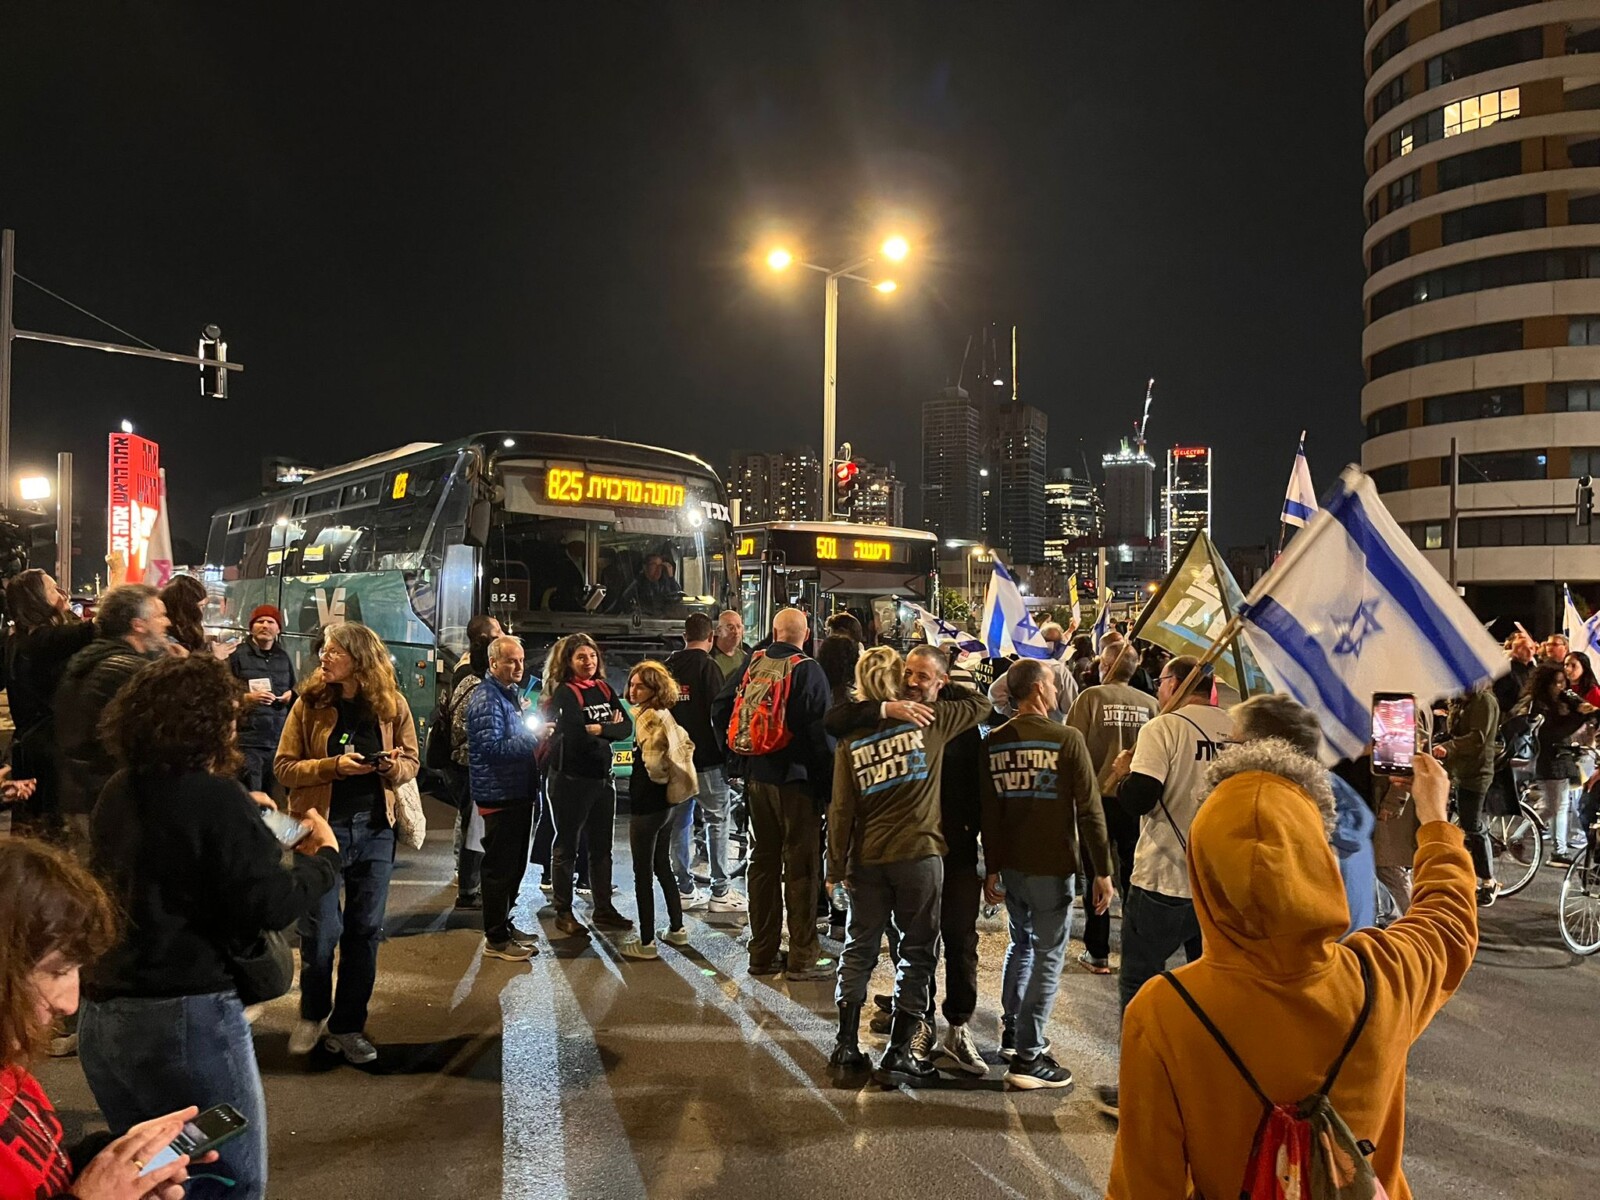 מפגינים למען שחרור החטופים חוסמים את התנועה בדרך בגין בתל אביב (צילום: אורן דגן)